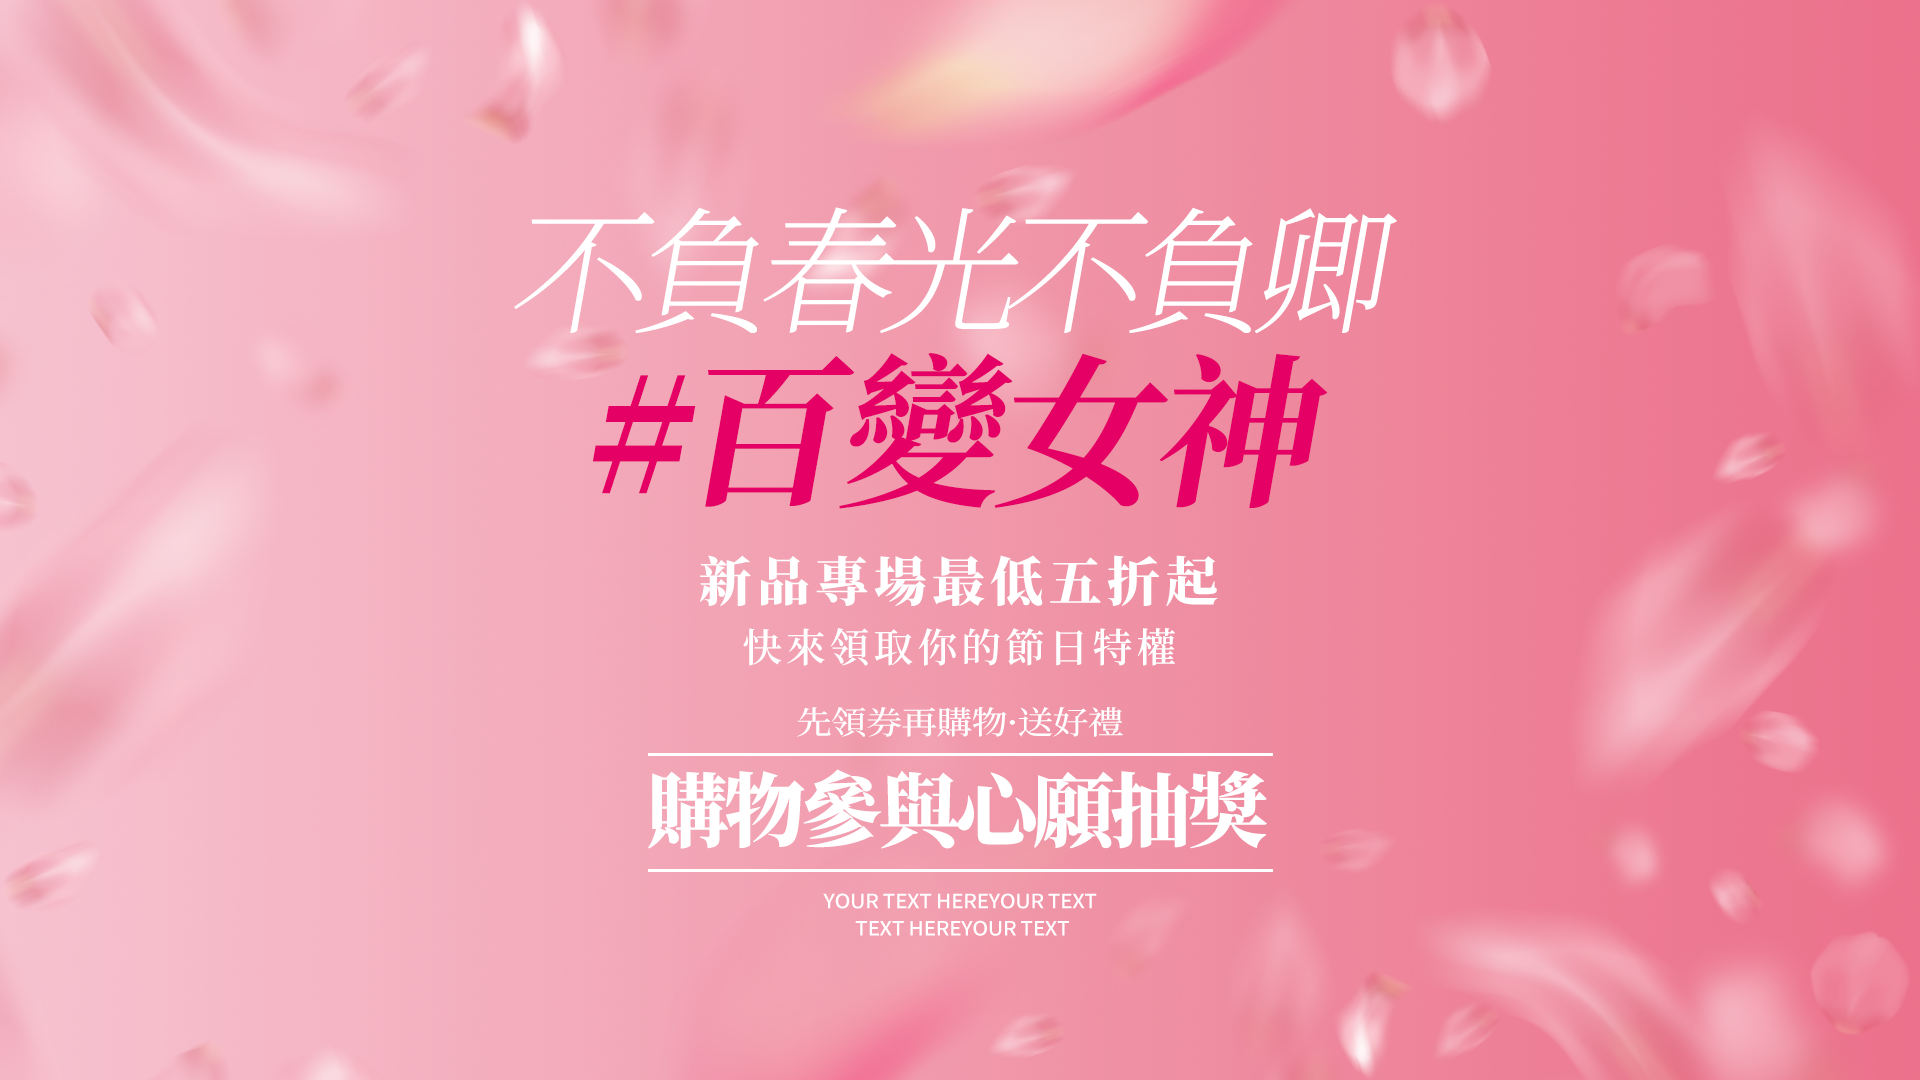 花瓣飞舞百变女神女人节节日宣传促销网页横幅图片